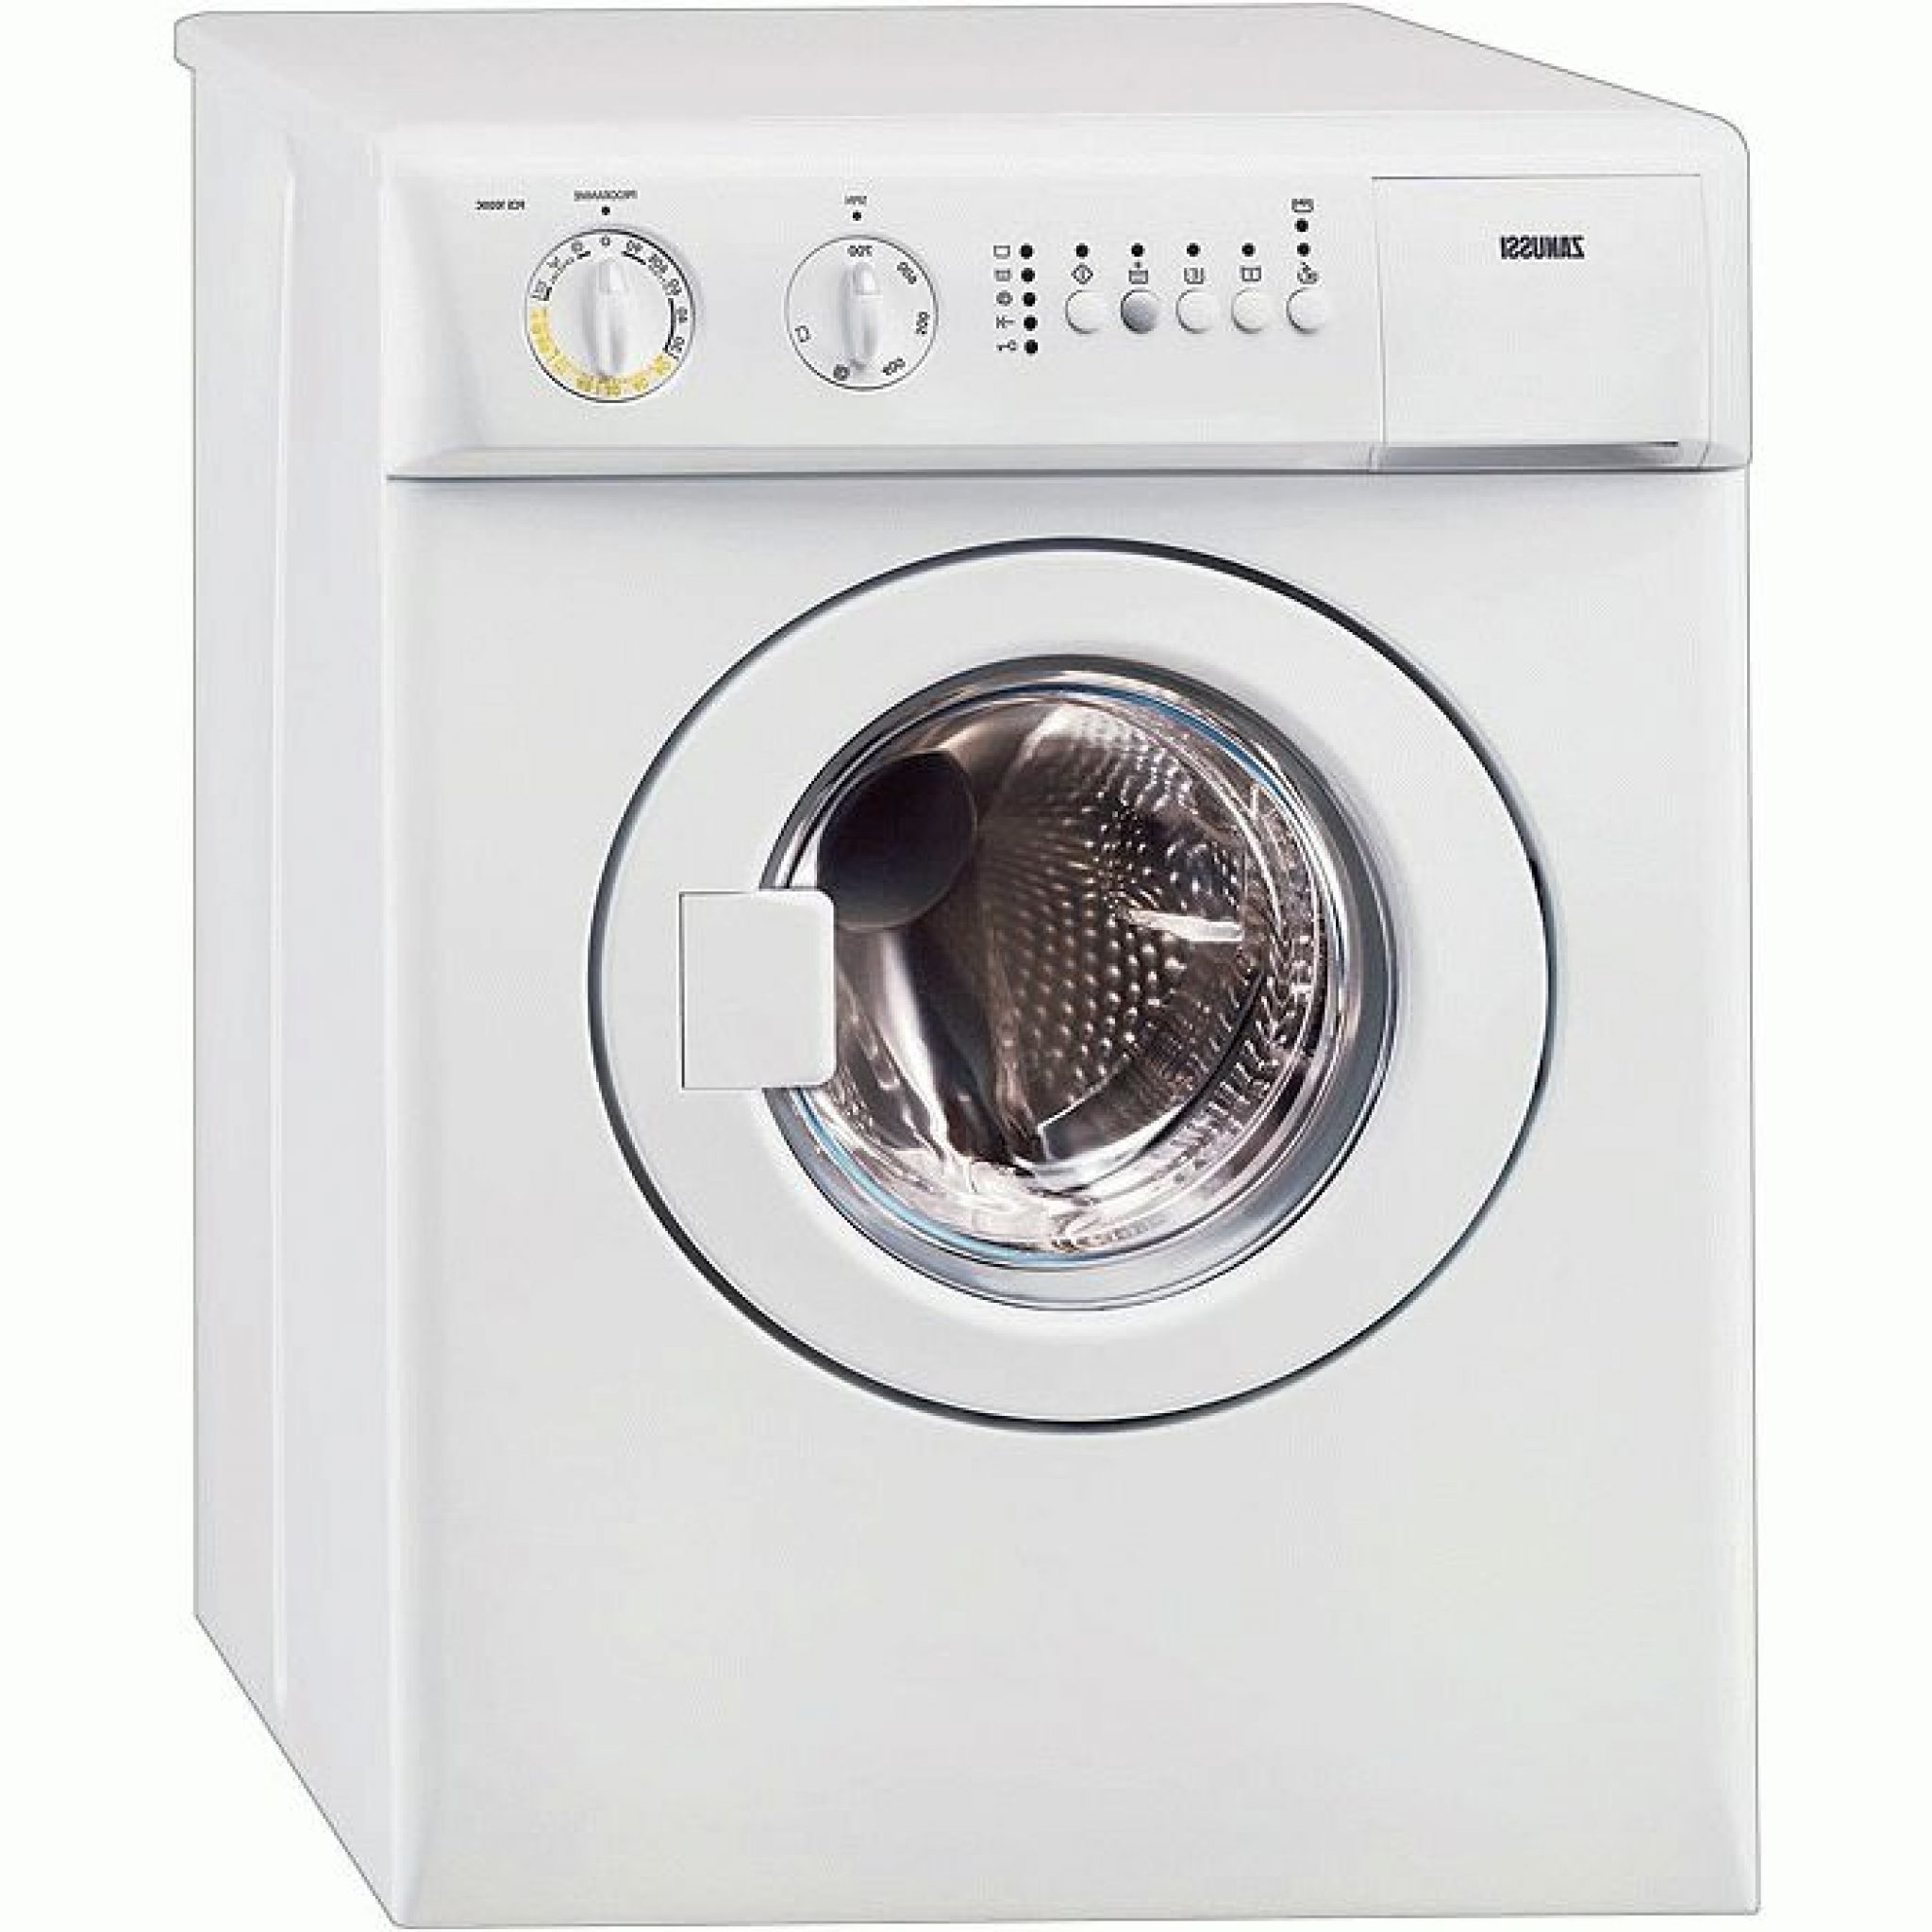 По каким критериям выбирать стиральную машину?